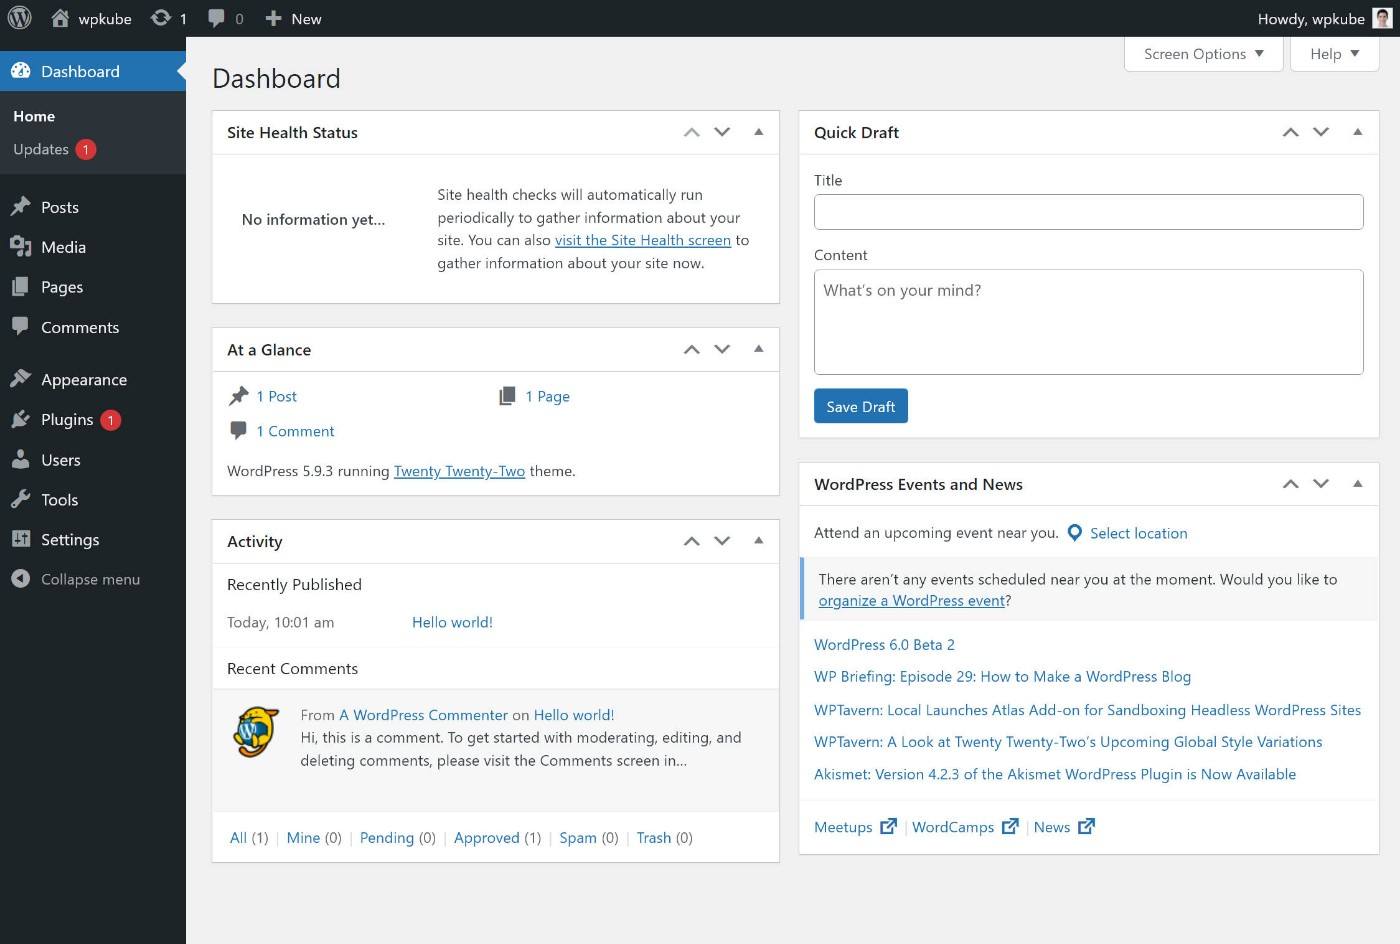 Self-hosted WordPress dashboard